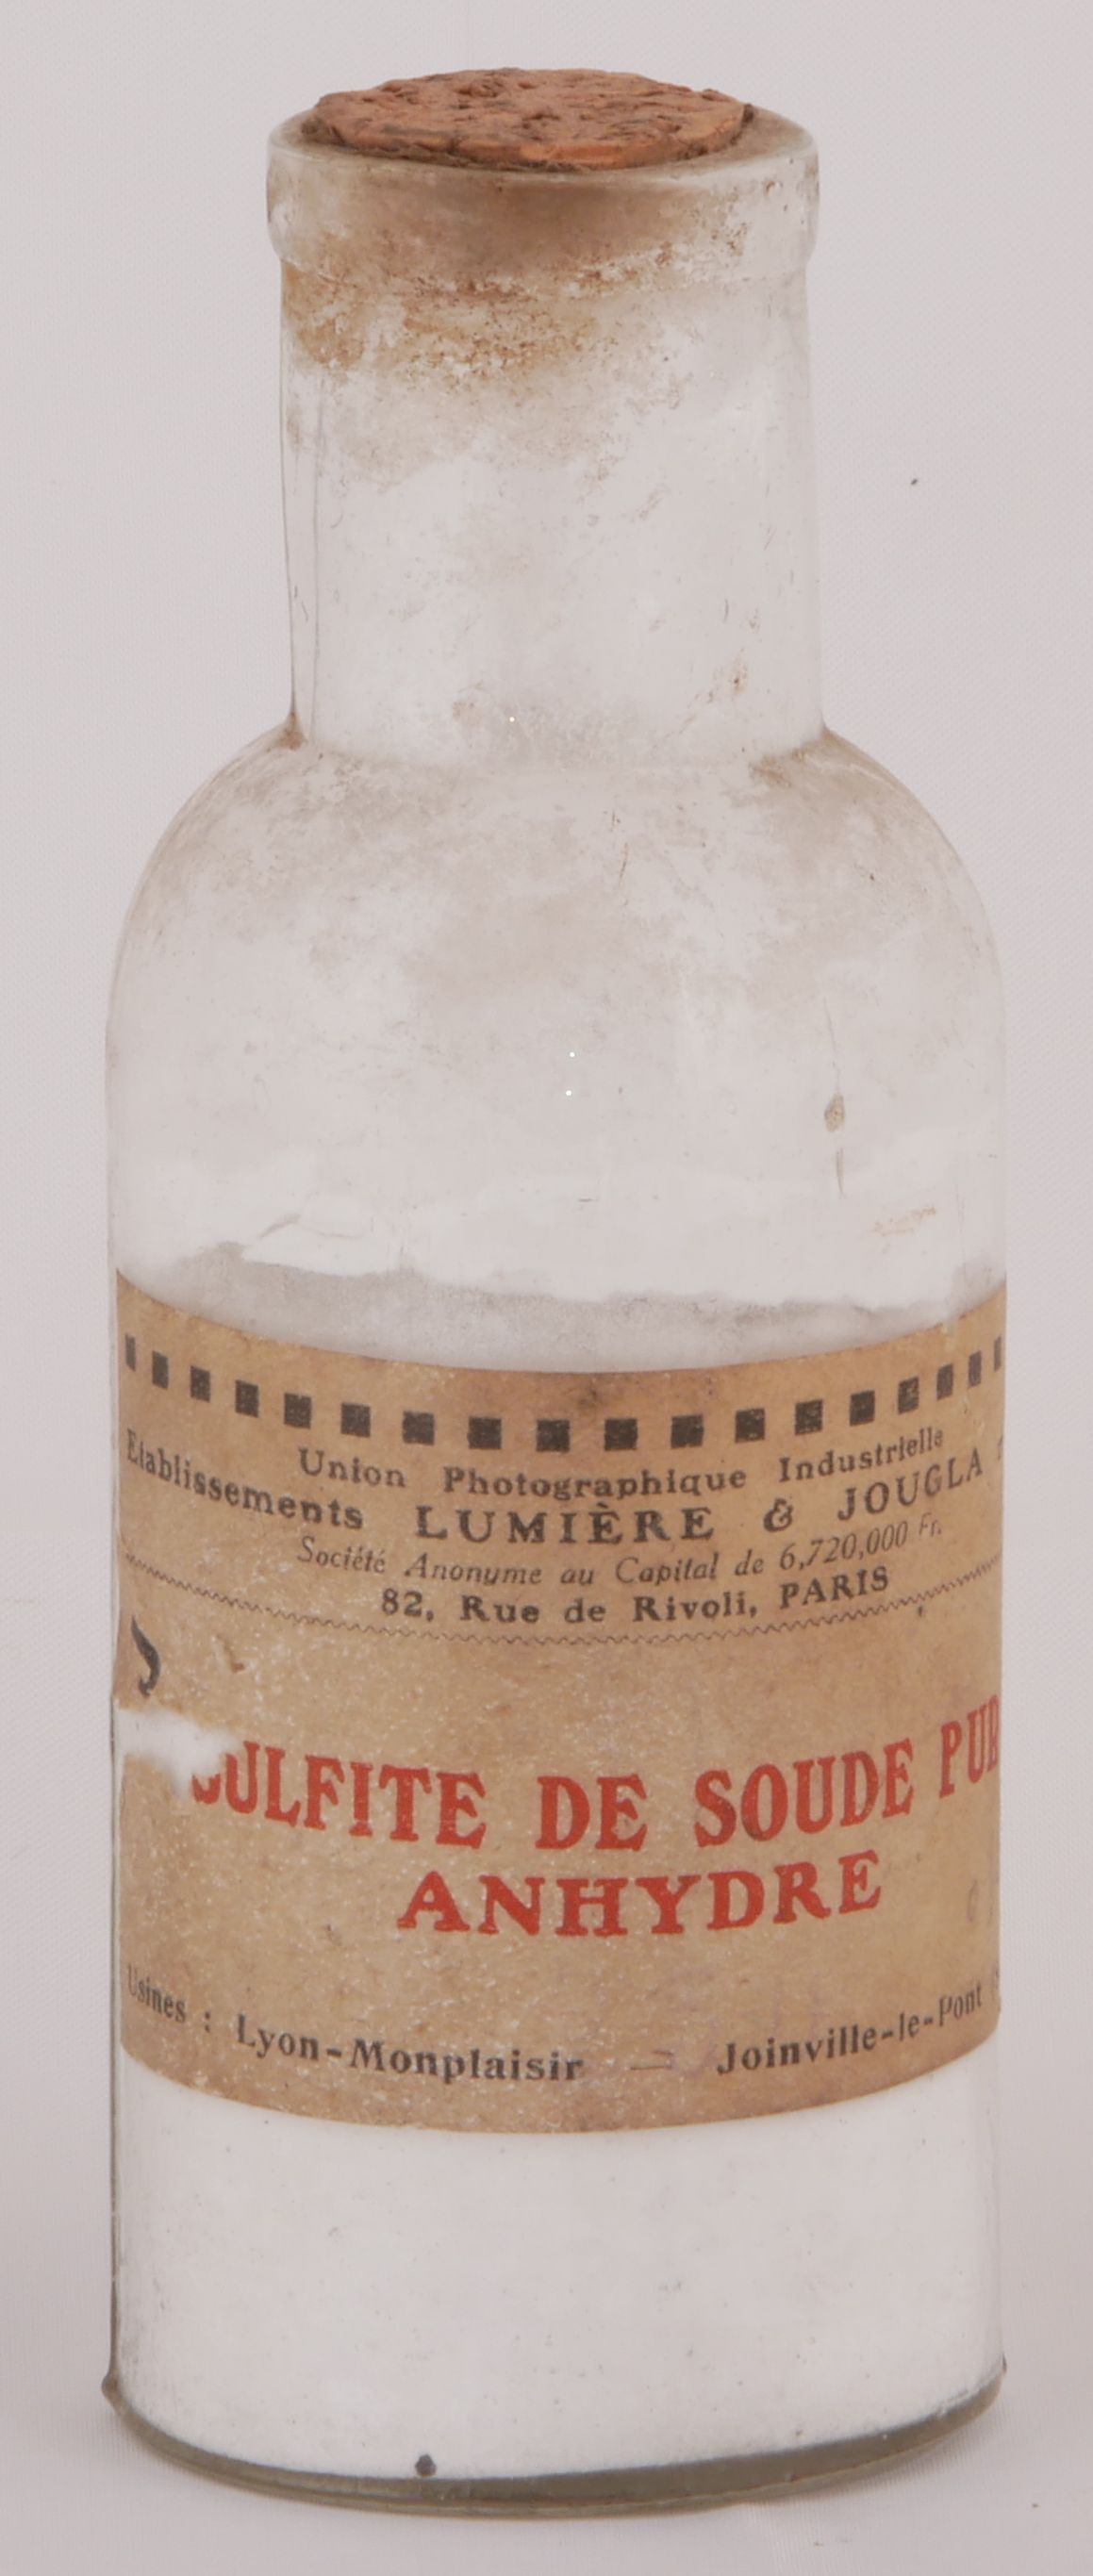 Sulfite de soude - 100 g